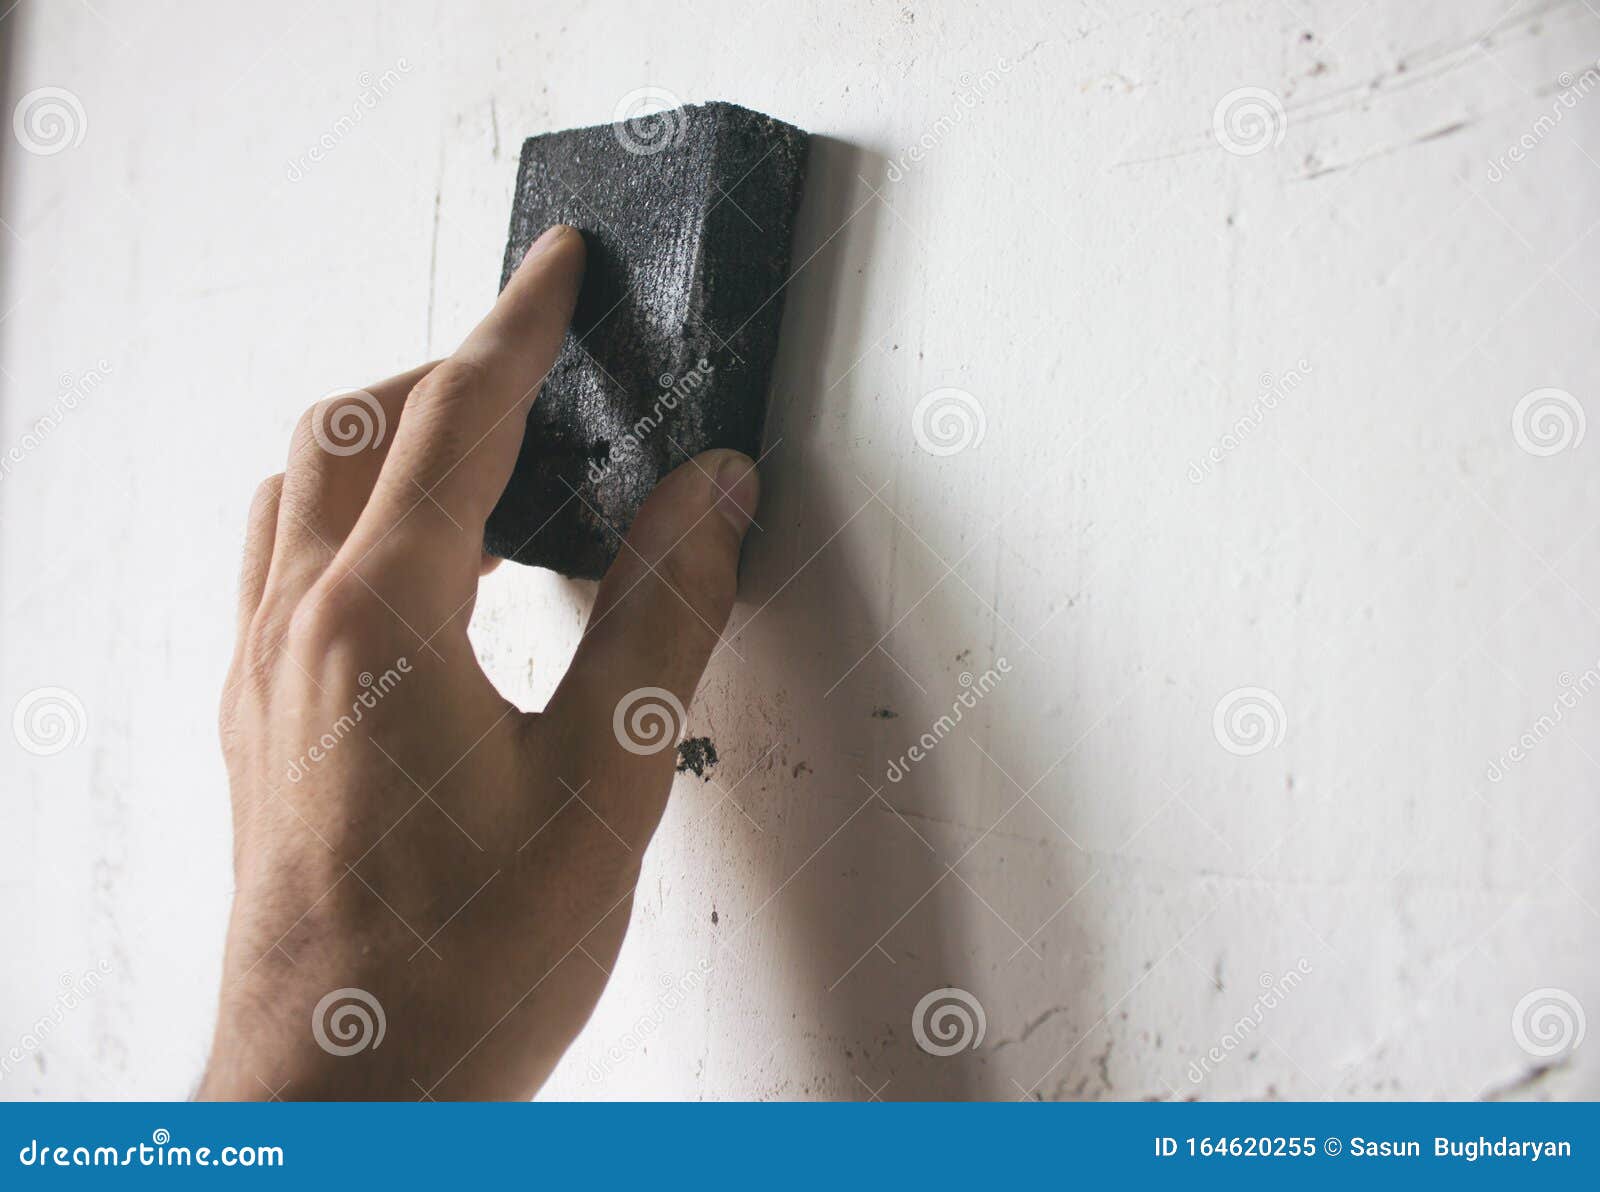 砂纸打磨墙面有哪些小技巧和小方法 - 知乎